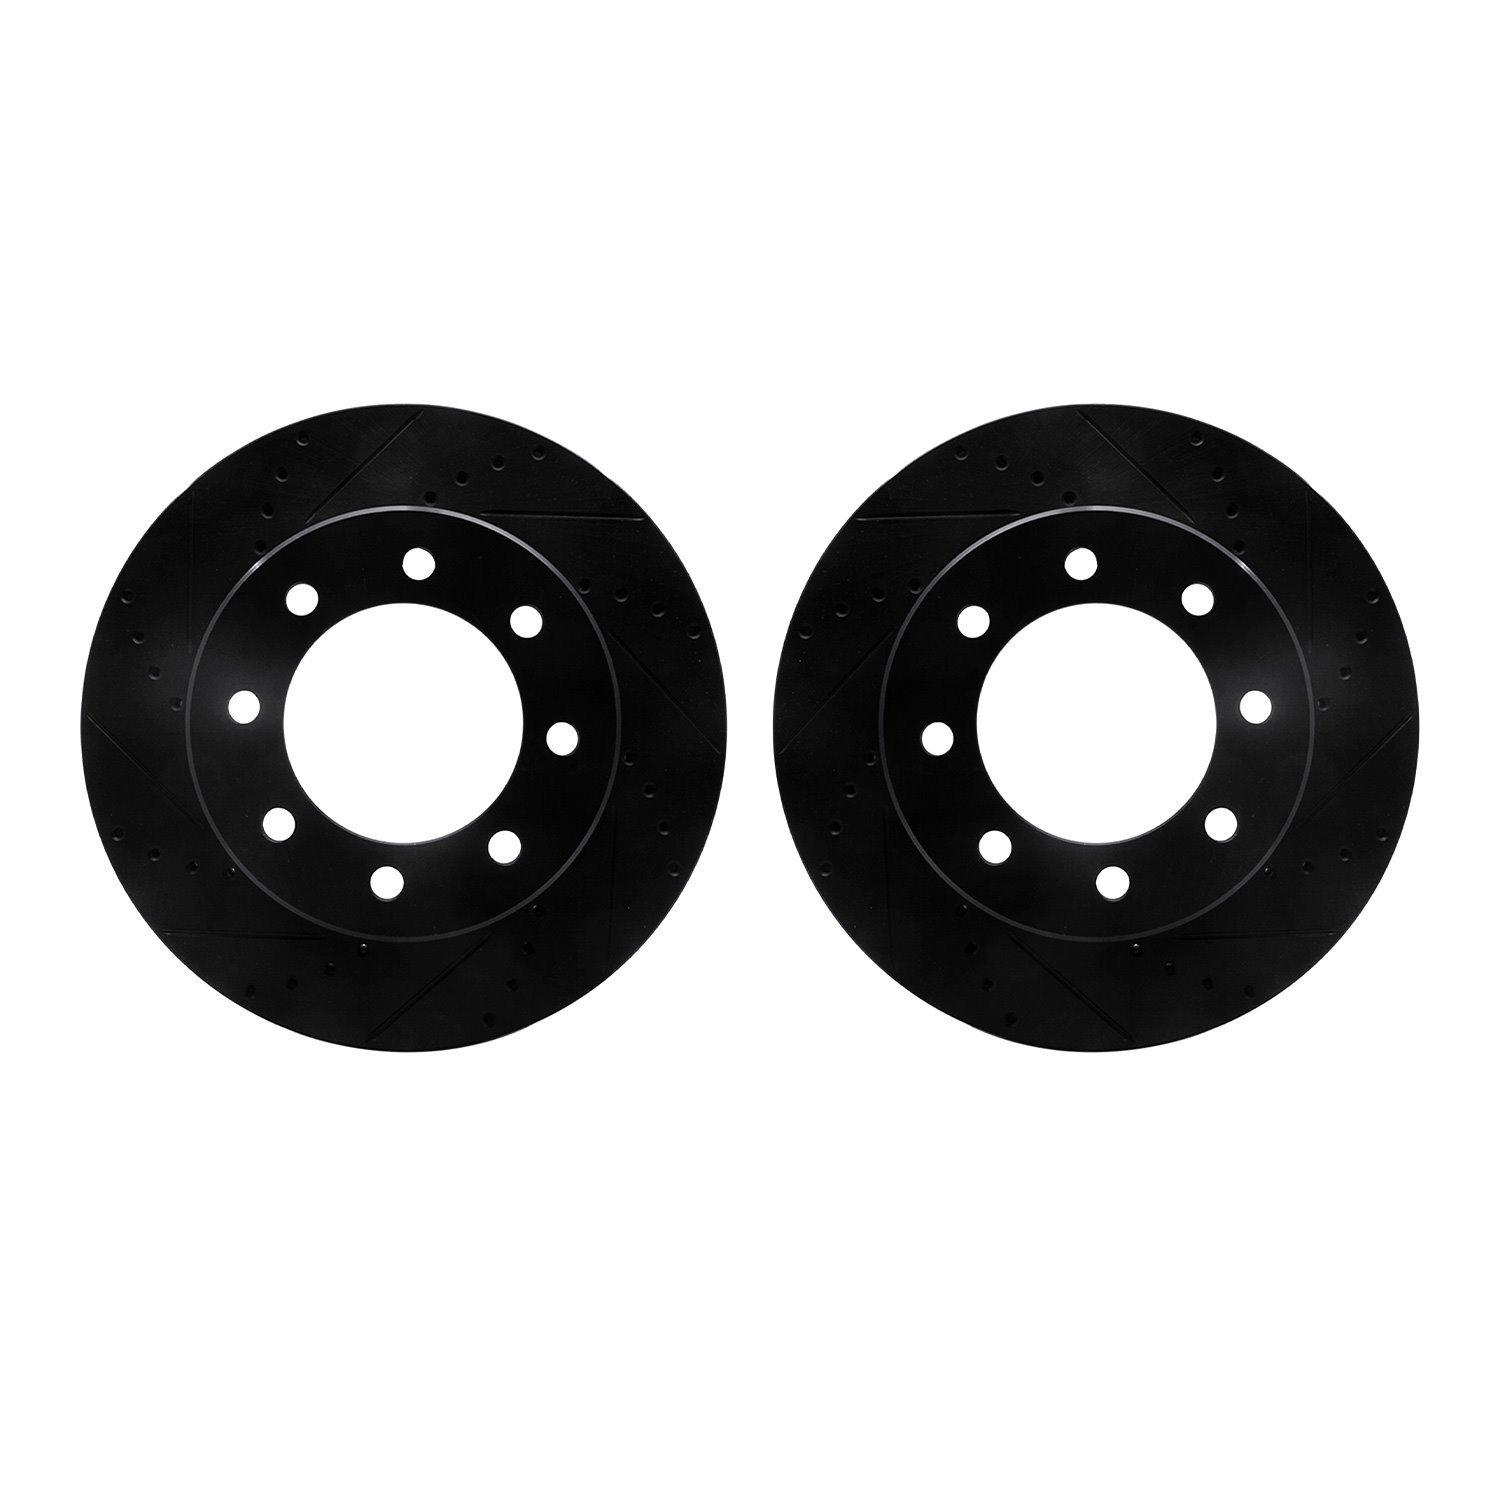 8002-40066 Drilled/Slotted Brake Rotors [Black], Fits Select Mopar, Position: Front